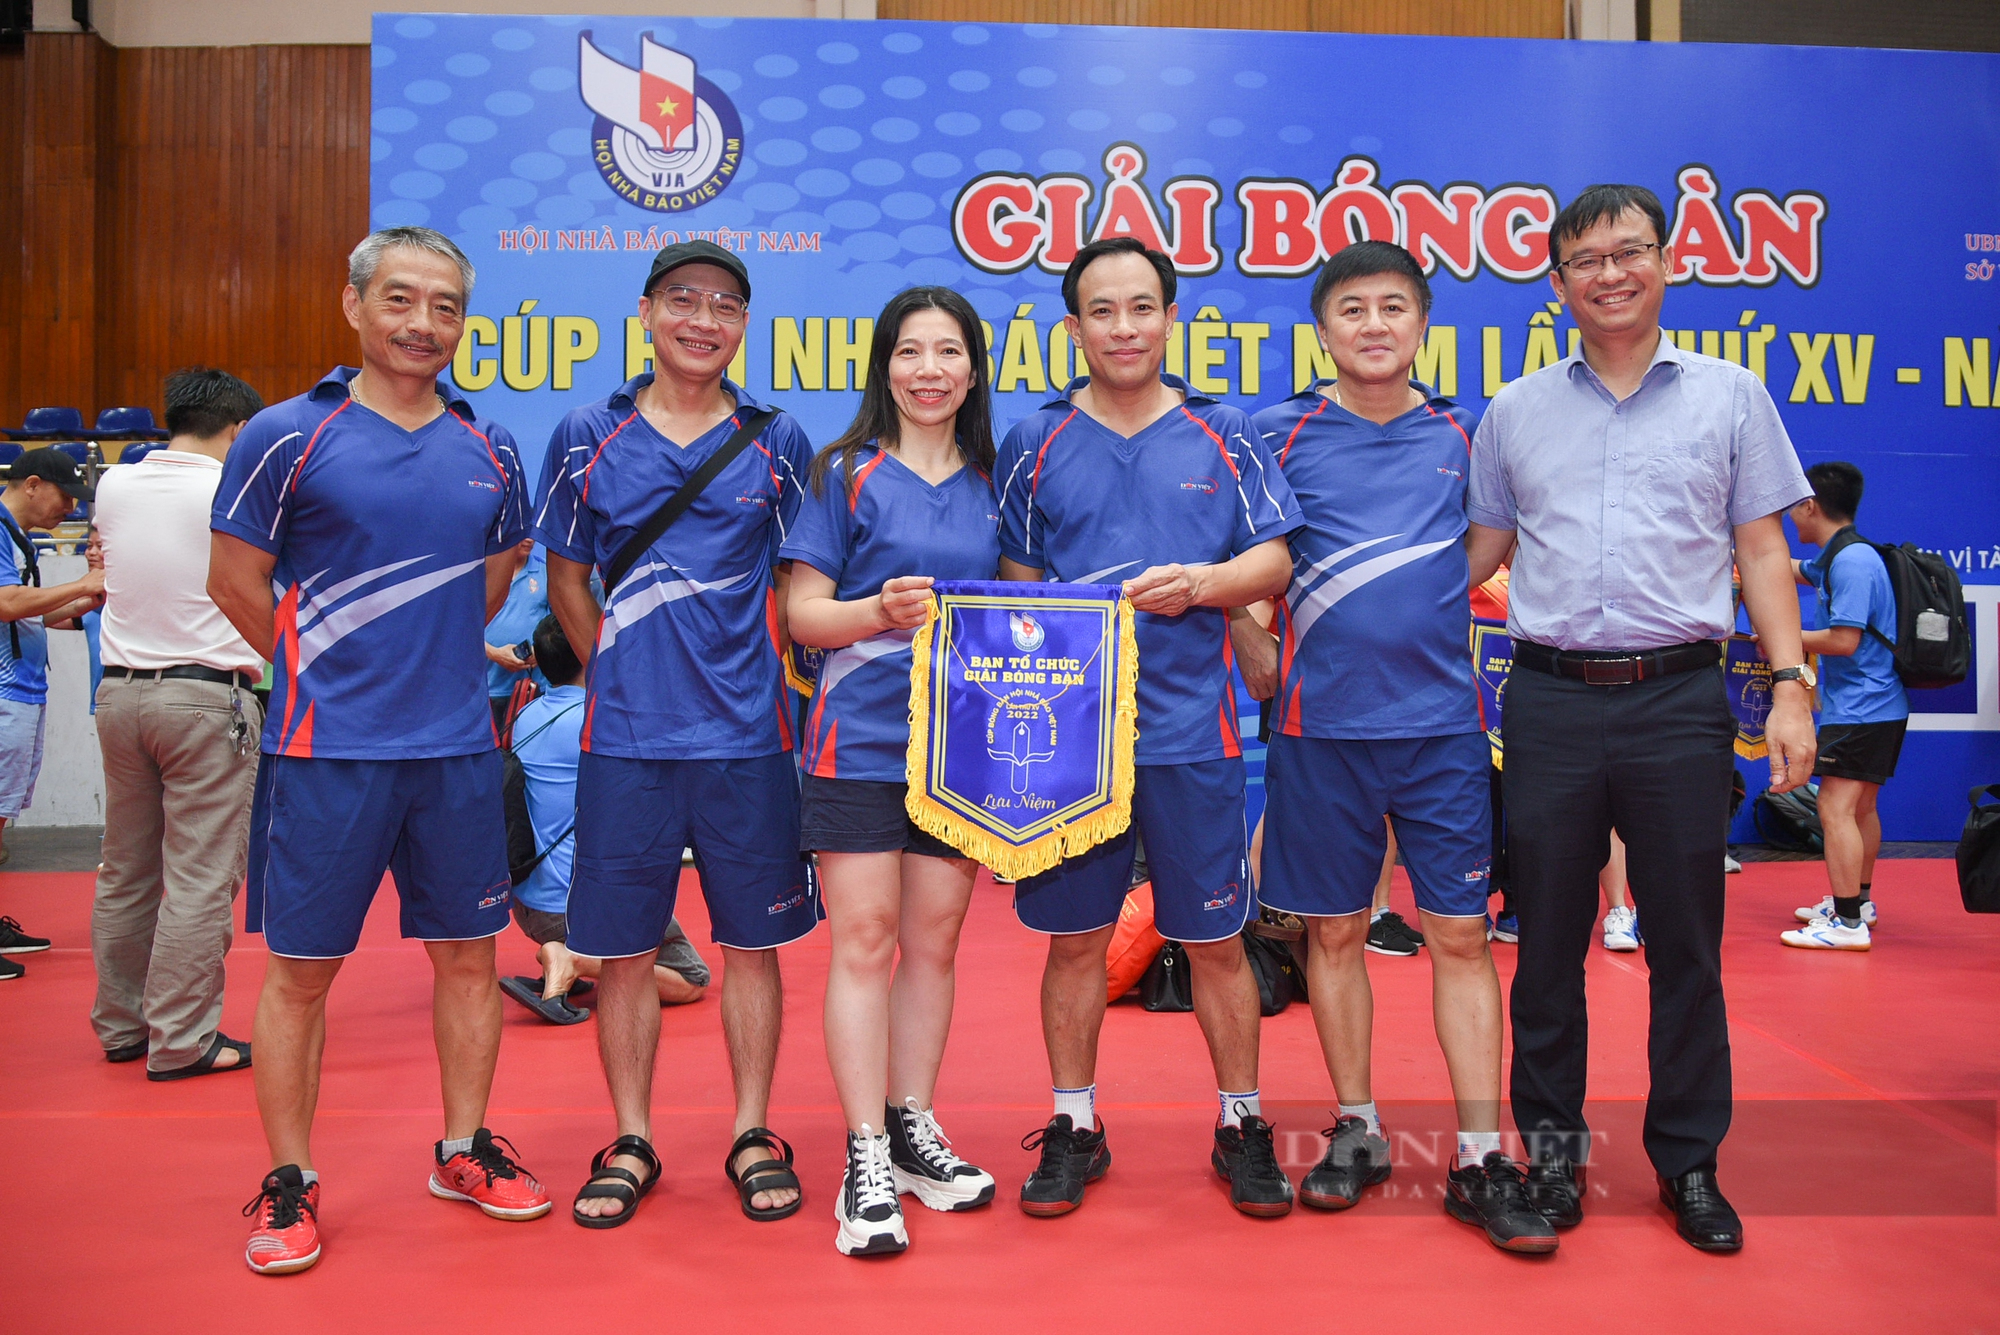 Báo NTNN/Dân Việt giành chiến thắng đầu tiên tại Giải Bóng bàn Cúp Hội nhà báo Việt Nam lần thứ XV - Ảnh 8.